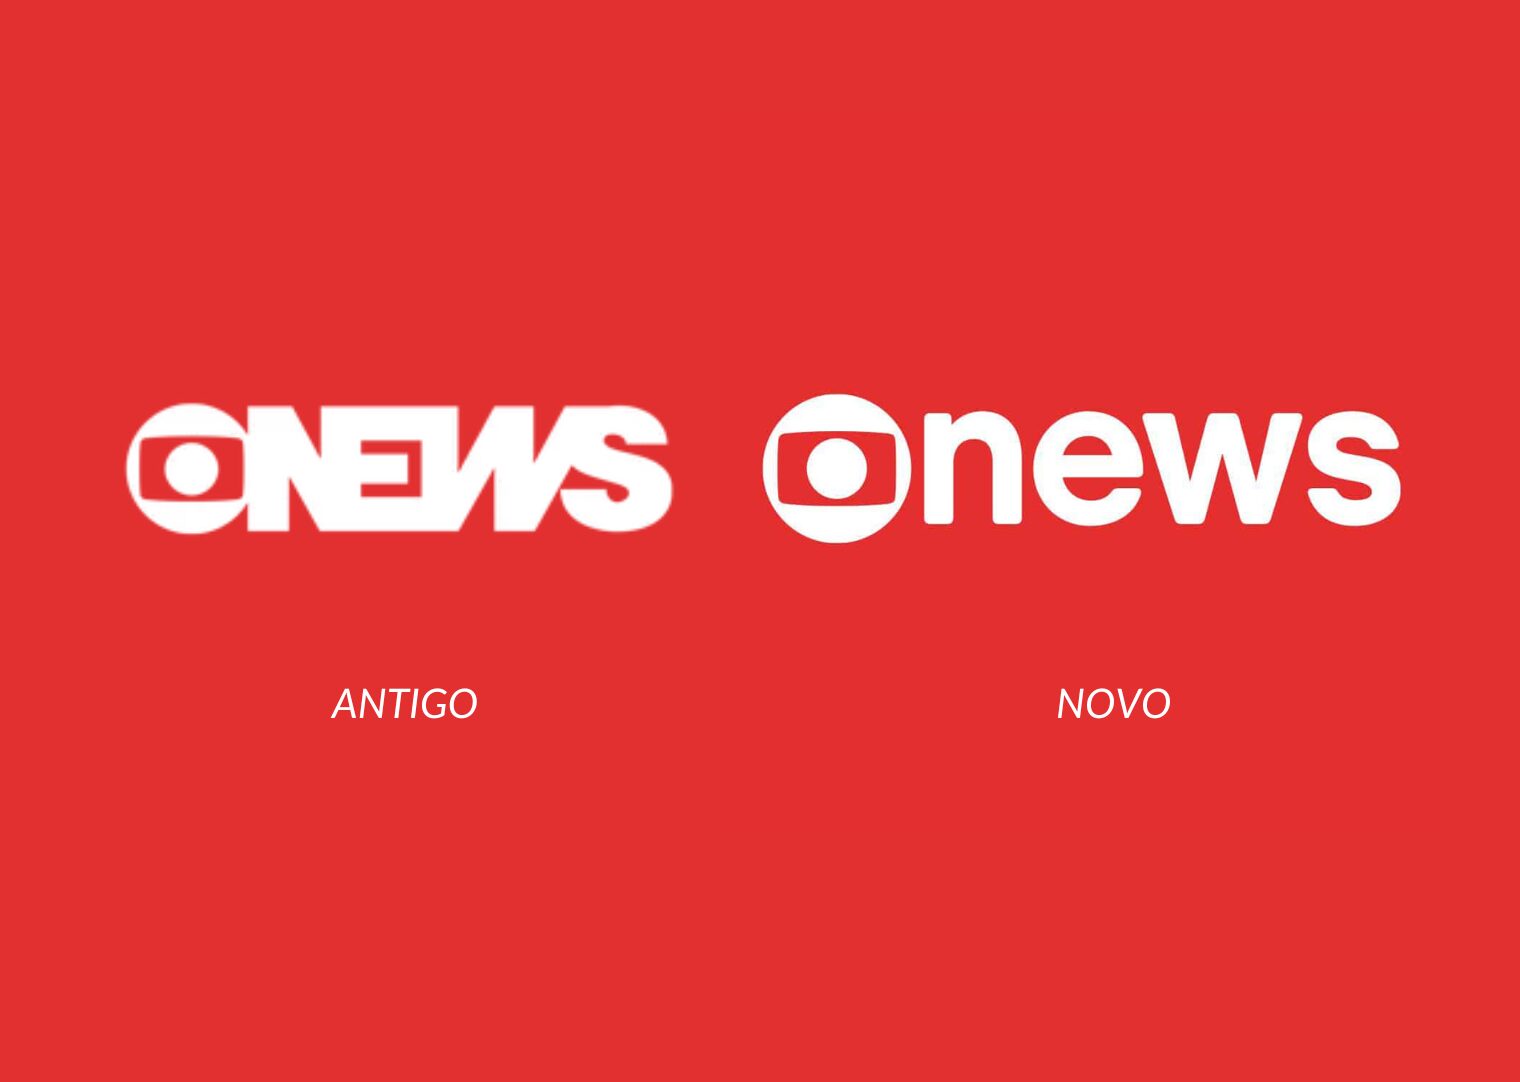 G1 - Globo News estreia nova identidade visual - notícias em Pop